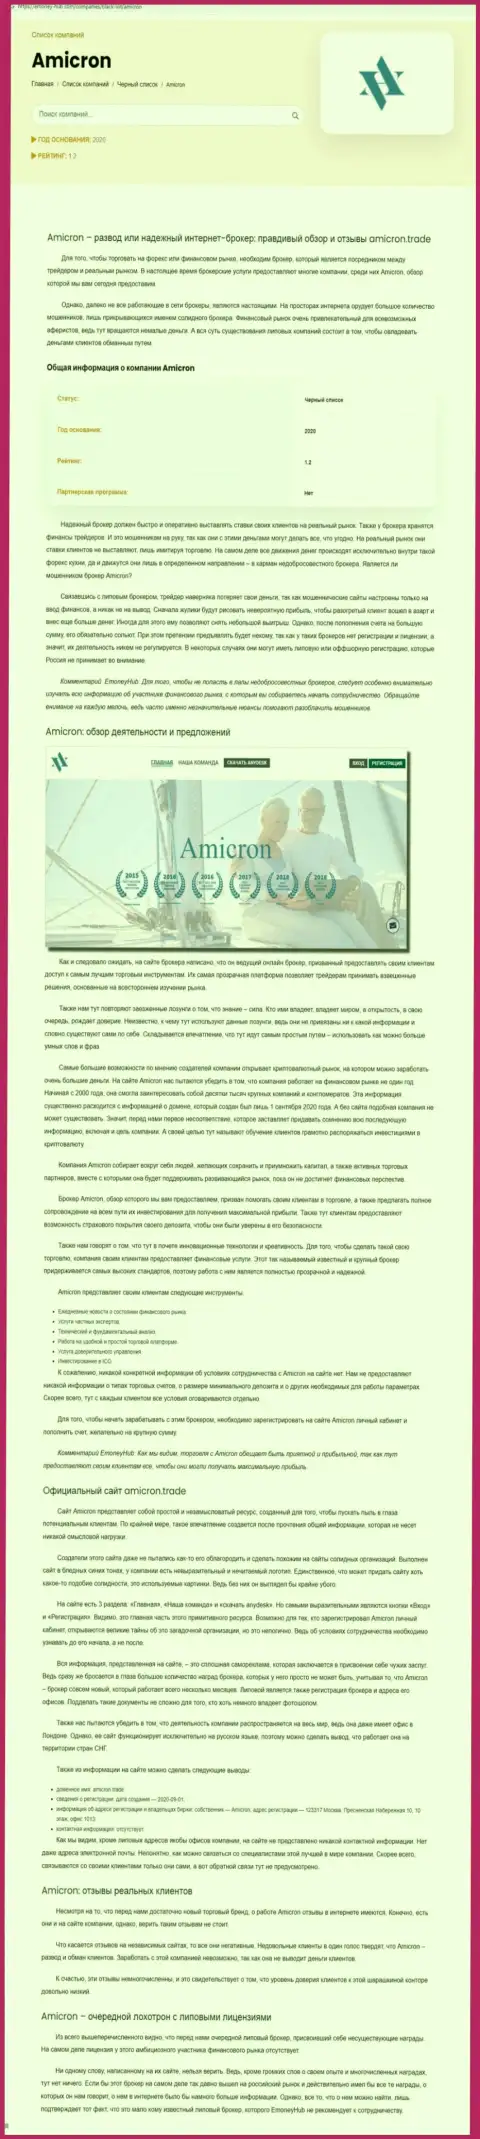 Amicron - это циничный грабеж клиентов (обзорная статья незаконных деяний)